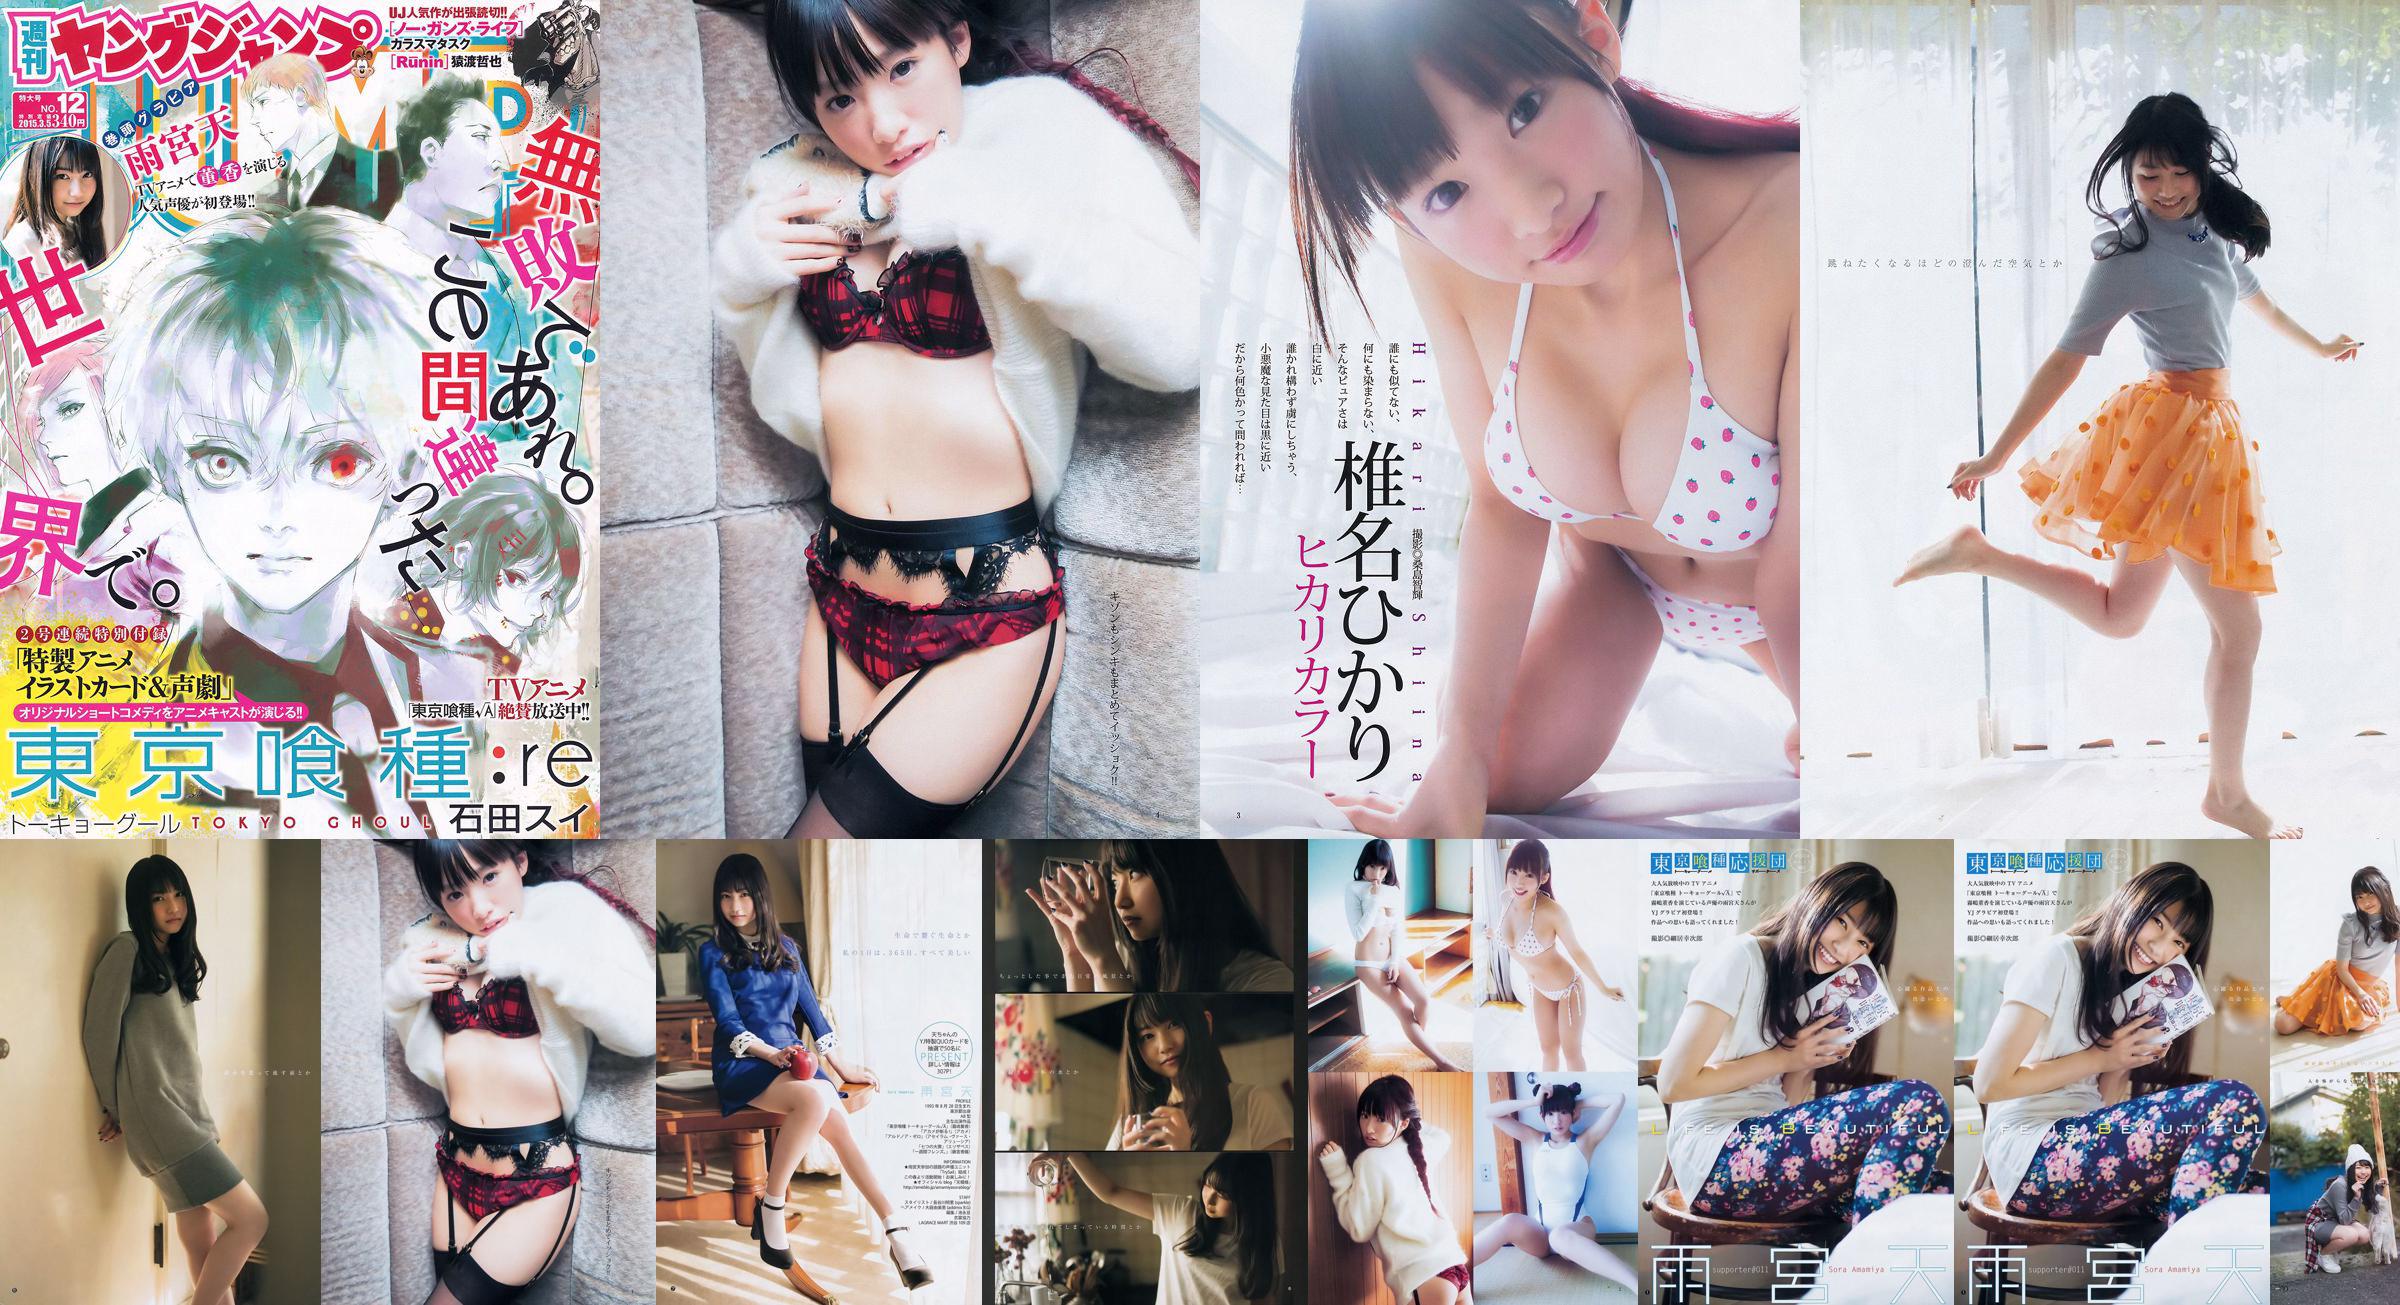 Amamiya Tian Shiina ひかり [Weekly Young Jump] 2015 No.12 Photo Magazine No.e1af9a Pagina 1